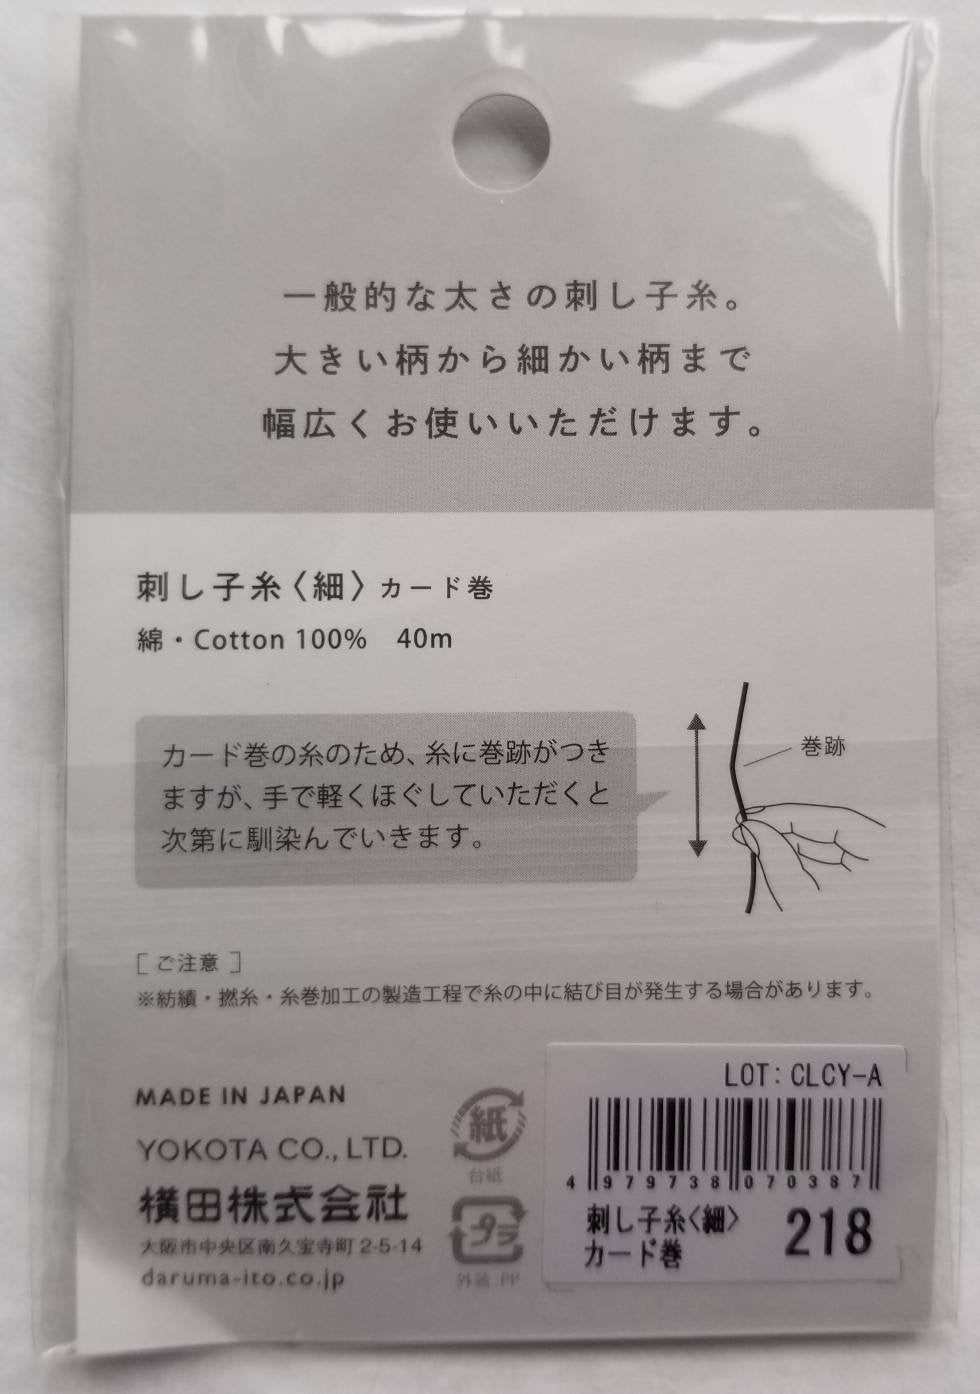 Daruma #218 DARK BROWN Japanese Cotton SASHIKO thread 40 meter skein 20/4 こげ茶 dark brown